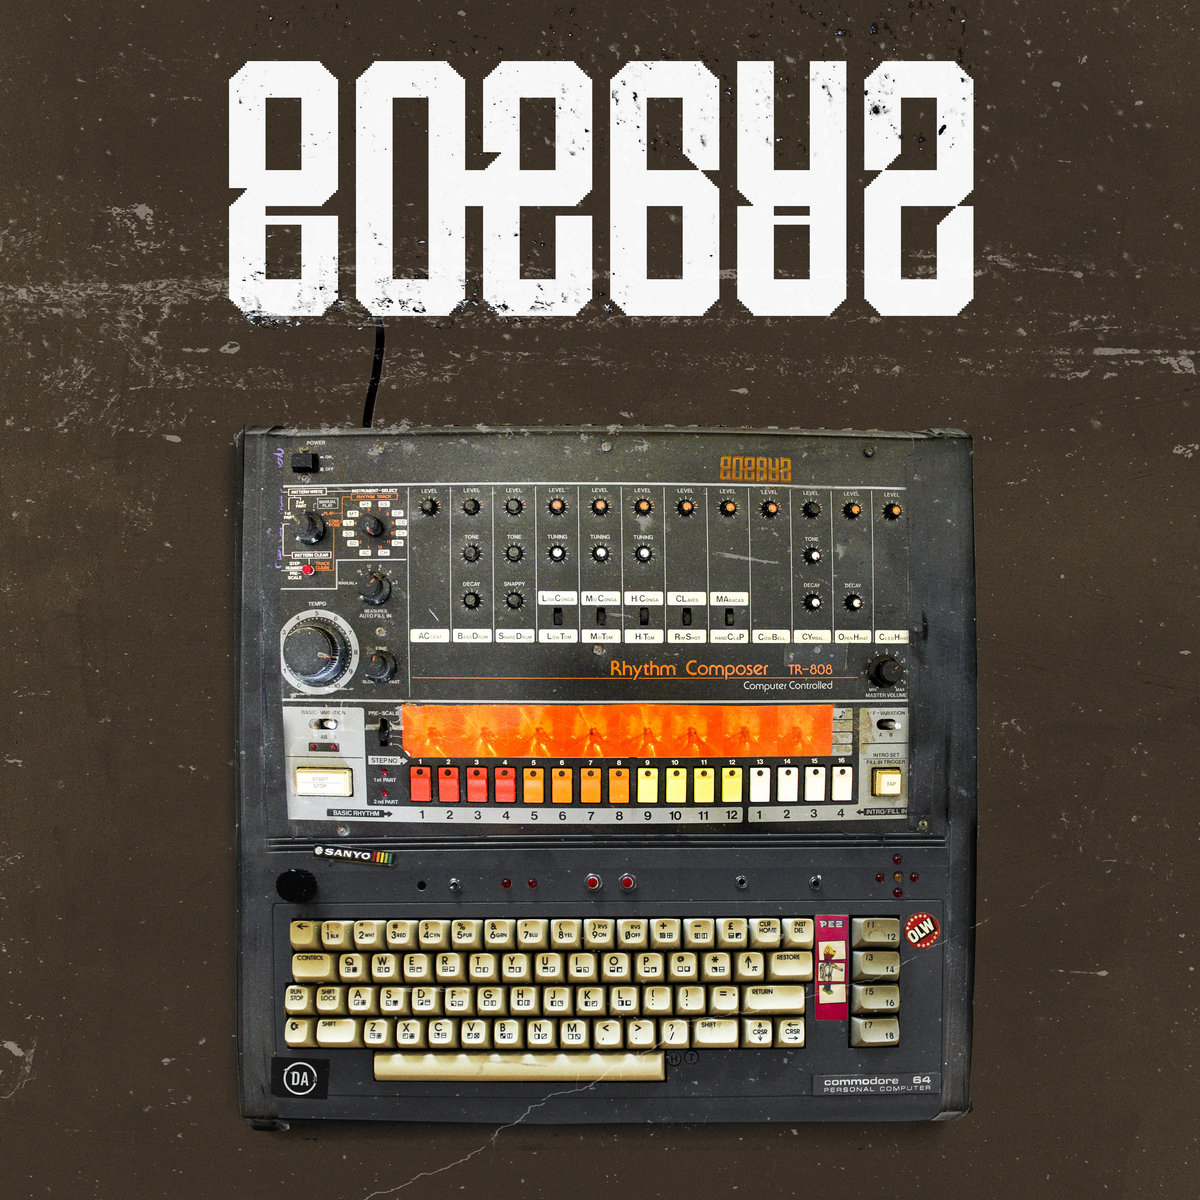 808642 (On Tape)